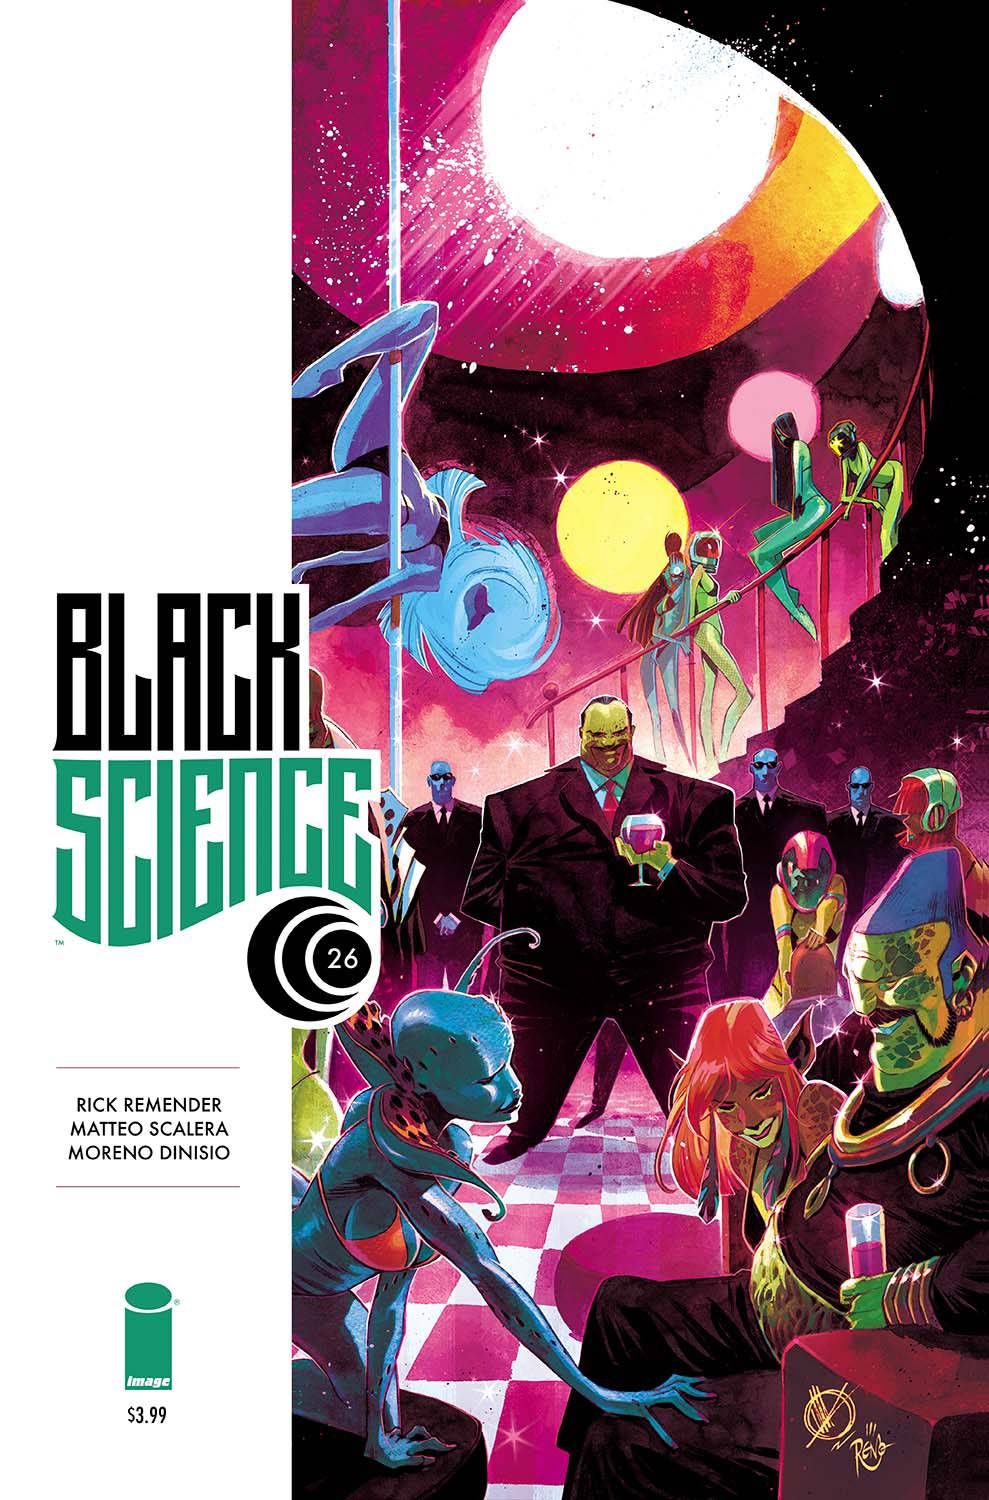 Black Science #26 Comic